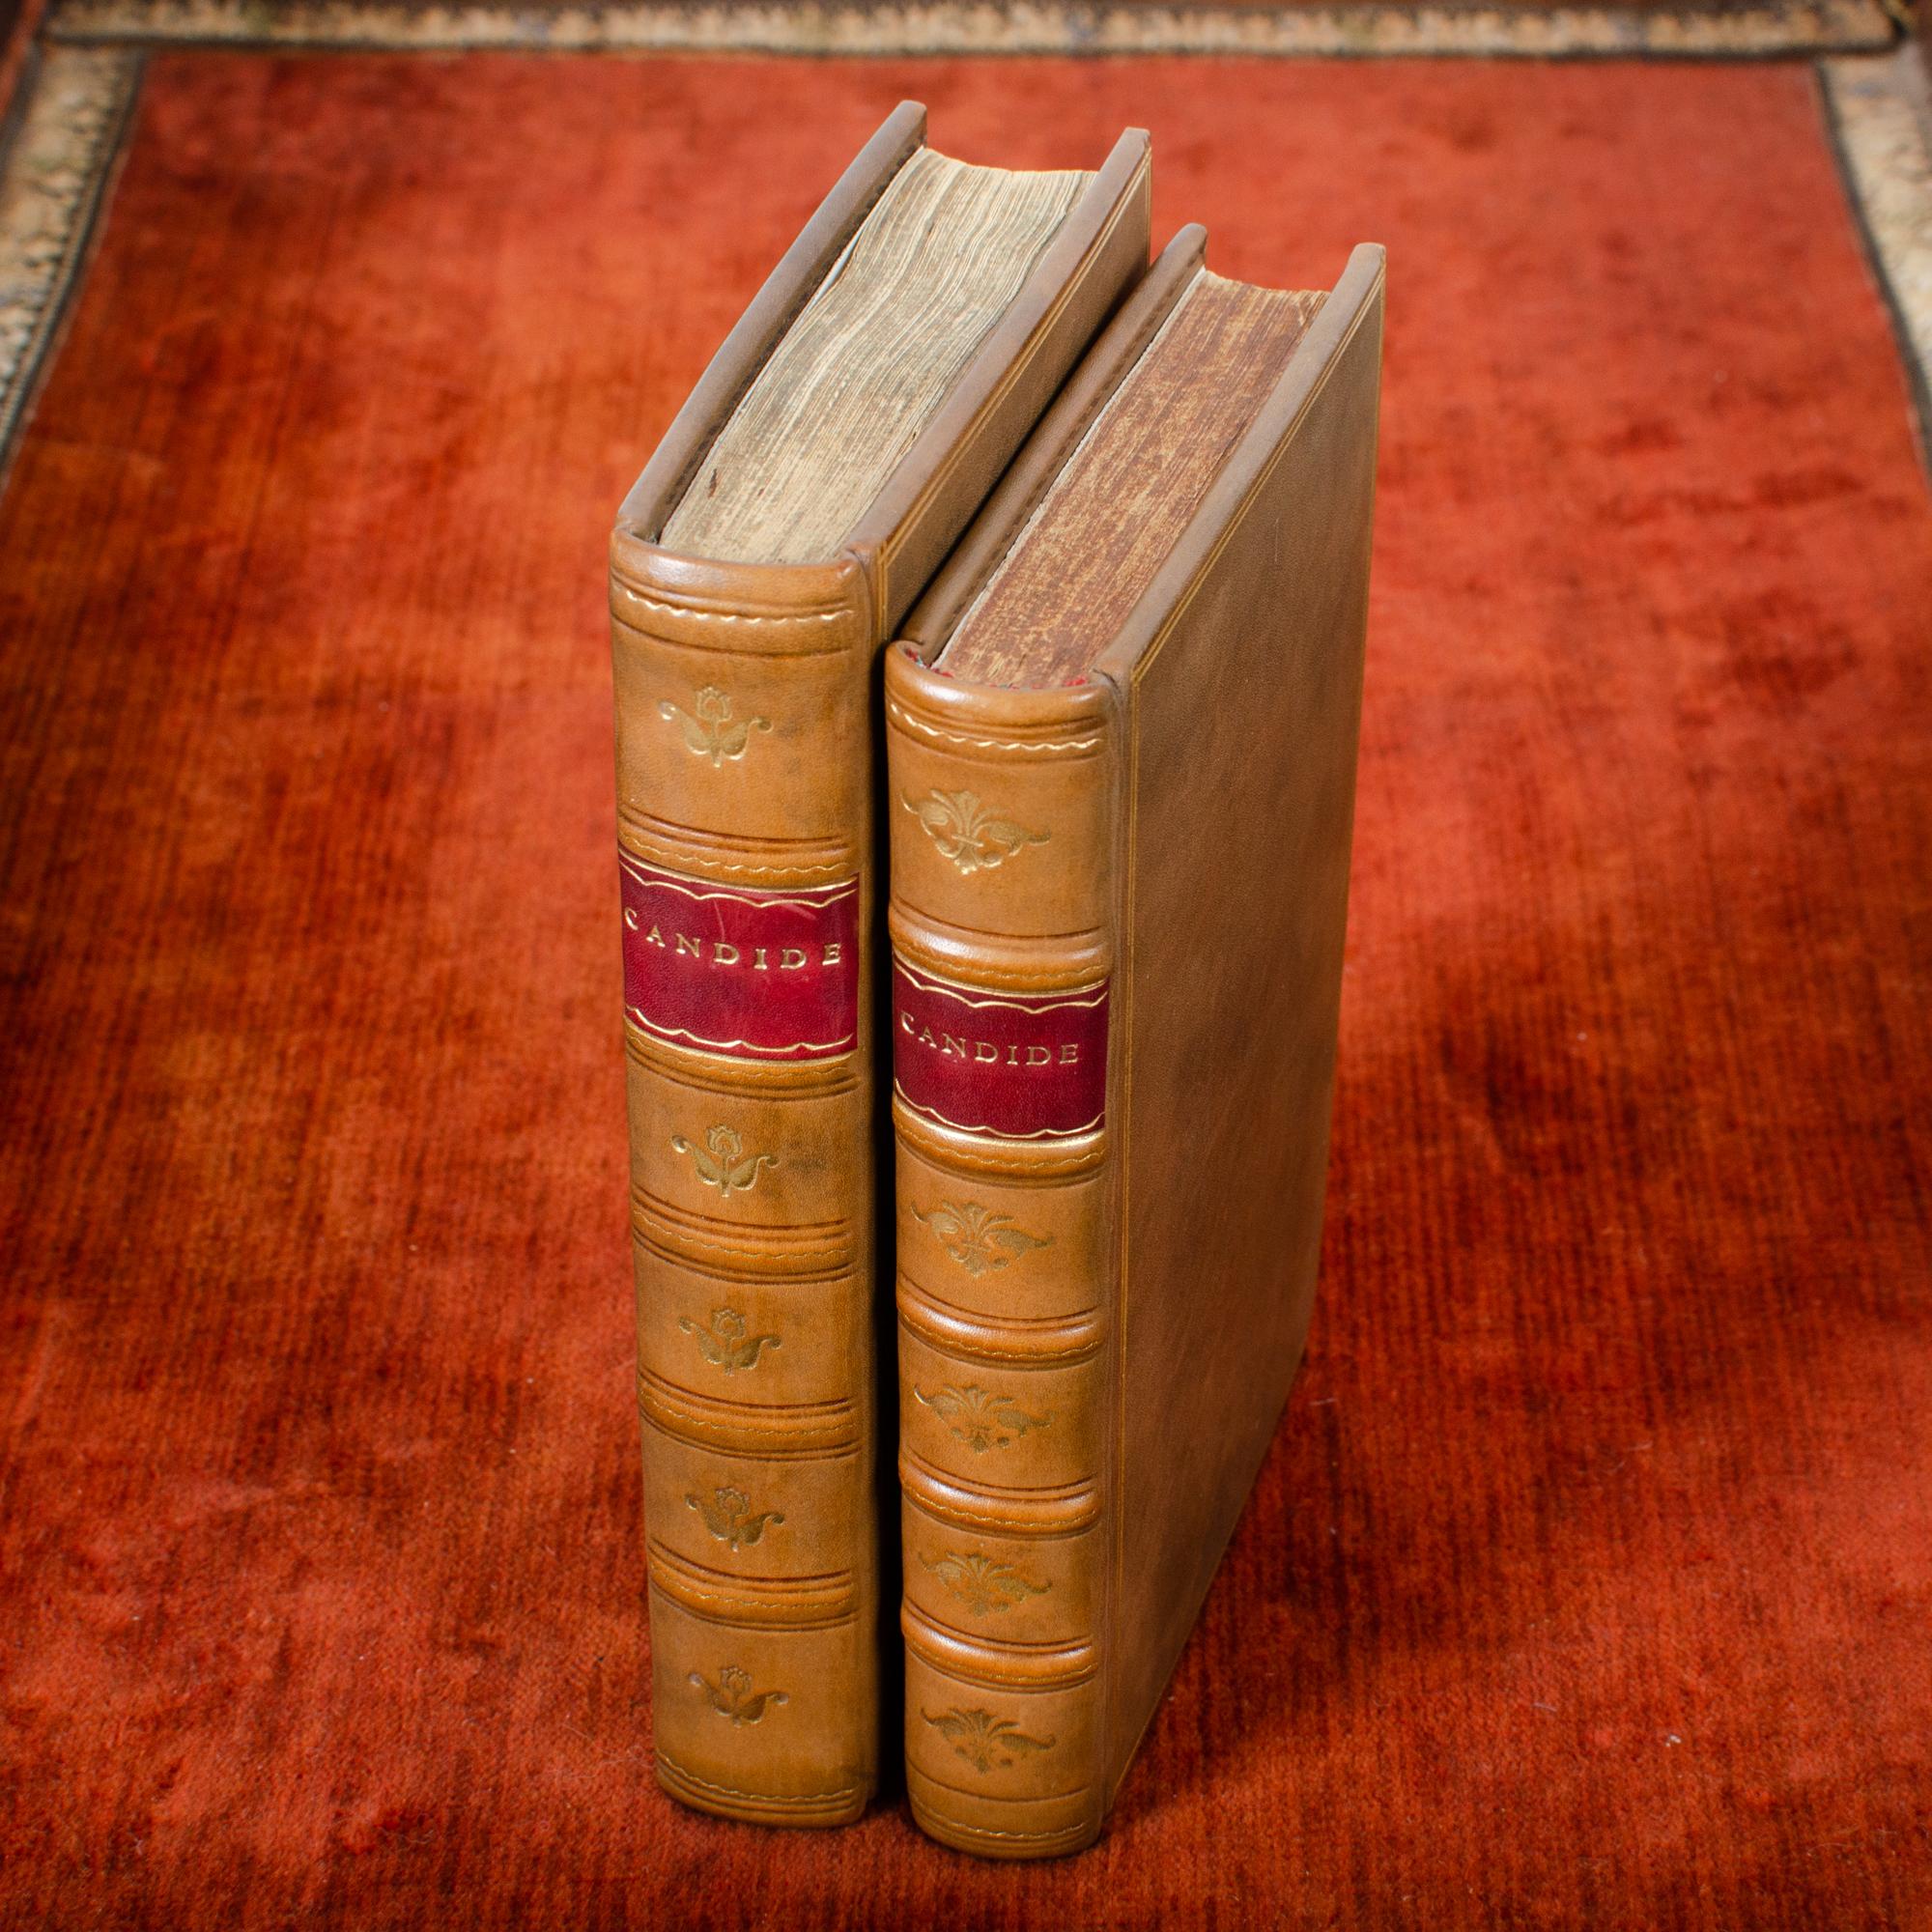 Rare exemplaire de la première édition de Candide, publiée à Genève par Cramer en 1759.

299pp.  Les ornements gravés sur bois et les pages corrigées par Voltaire (pp. 31/32, 41/42, 83/84, 85/86) correspondent tous à la 299G de Barbier (Morize 59a,